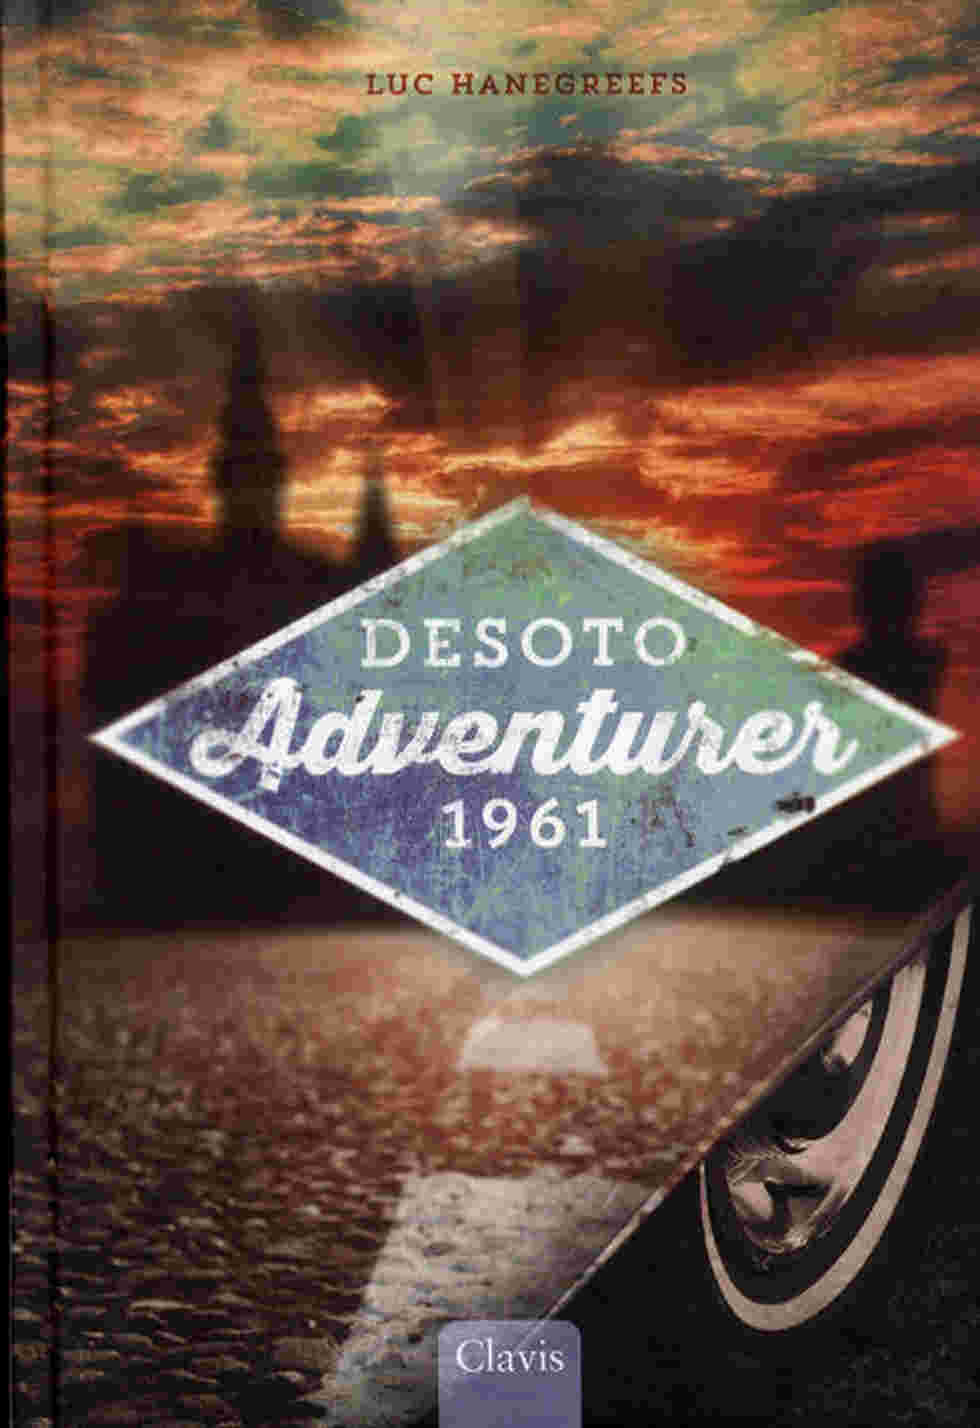 DeSoto adventurer 1961